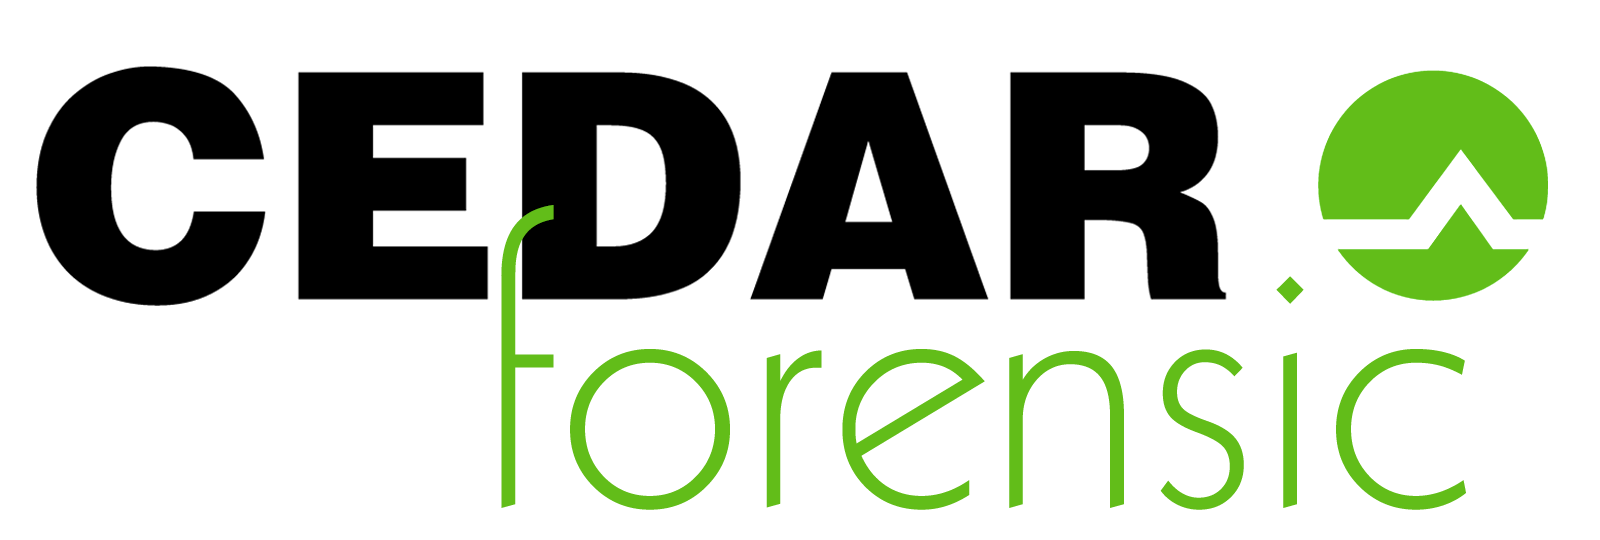 CEDAR Forensic logo